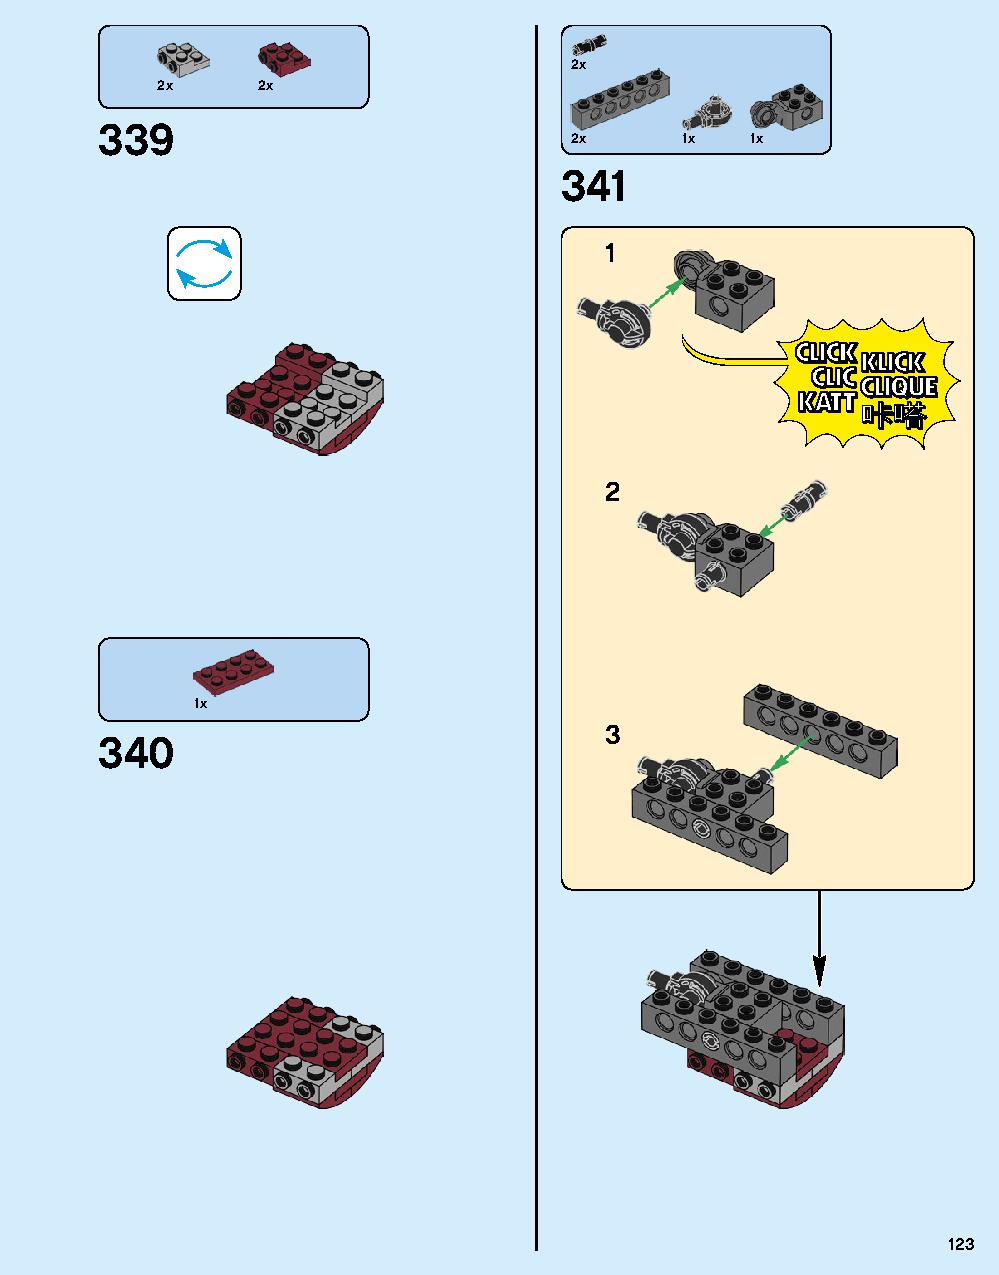 ハルクバスター：ウルトロン・エディション 76105 レゴの商品情報 レゴの説明書・組立方法 123 page